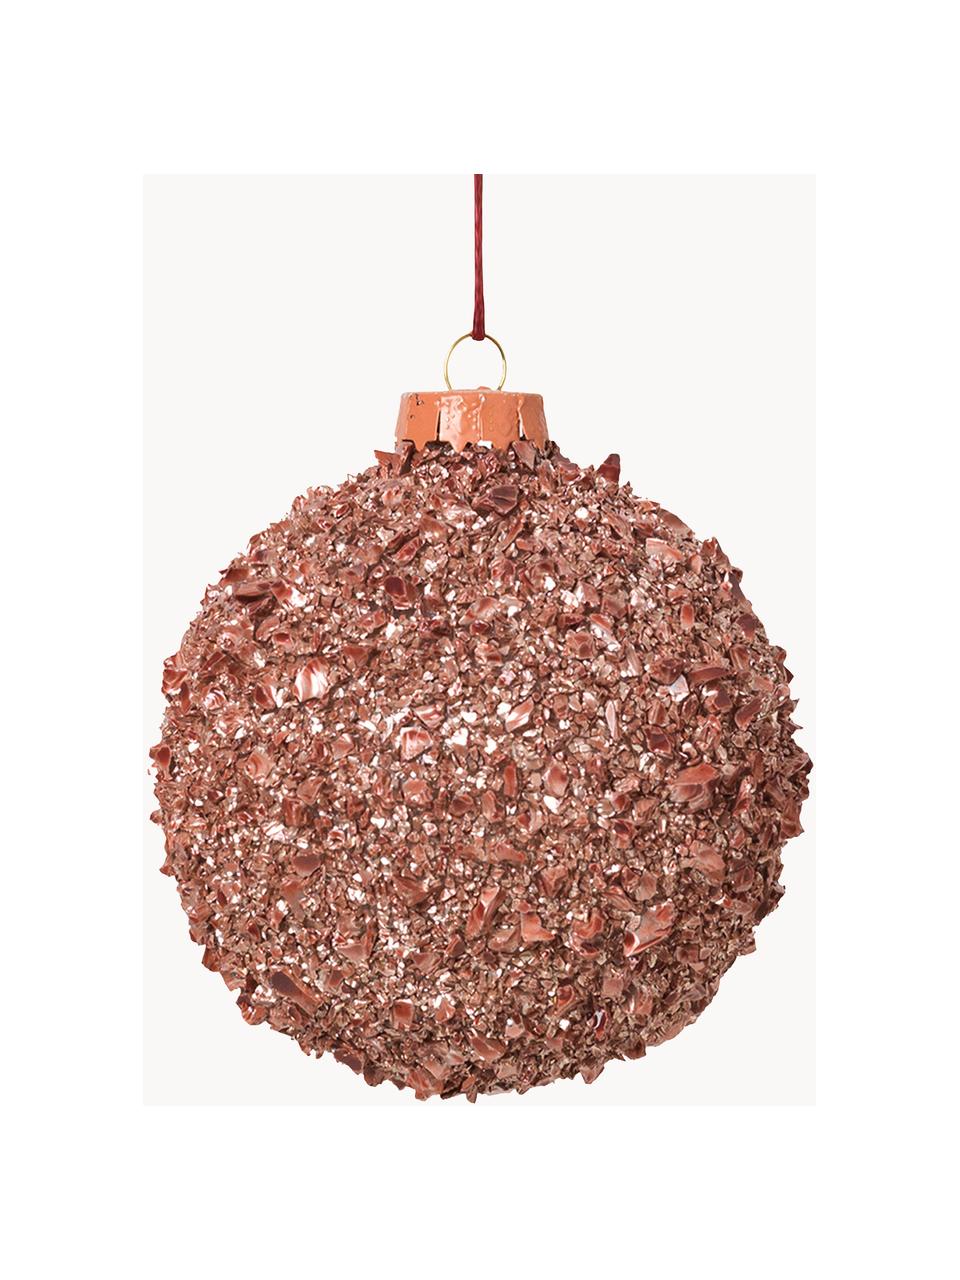 Vianočné ozdoby Cinna, 3 ks, Bledoružová, Ø 8 cm